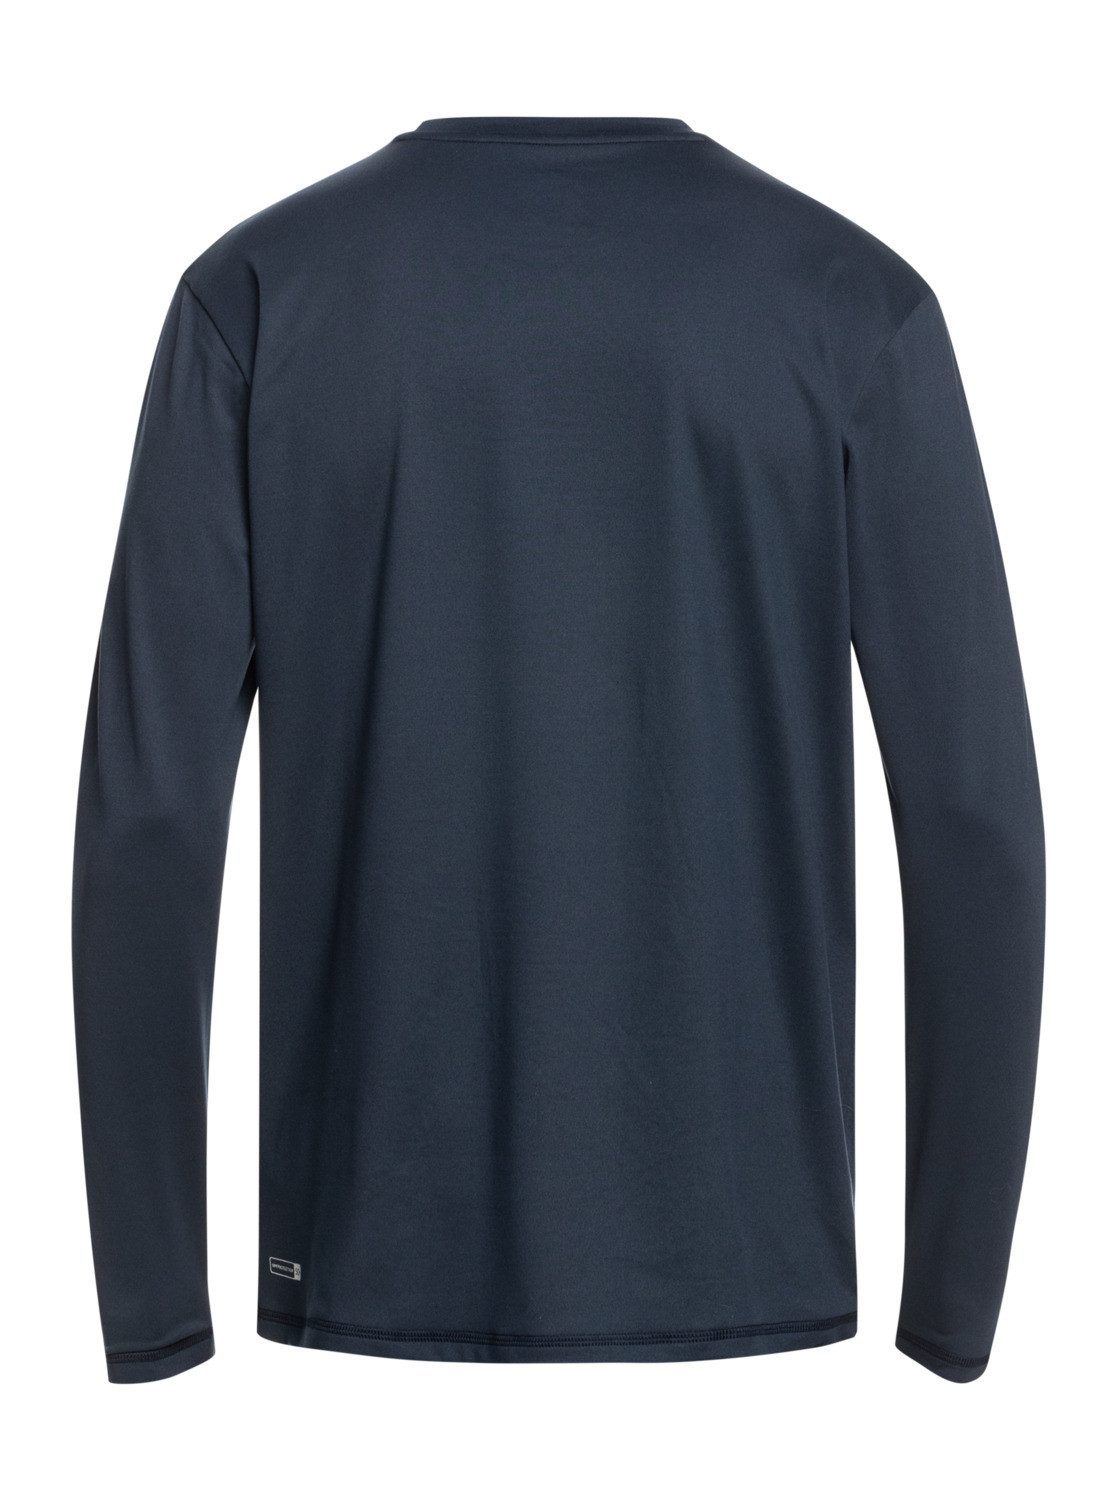 Blazer Shirt Navy Streak Quiksilver Neopren Solid